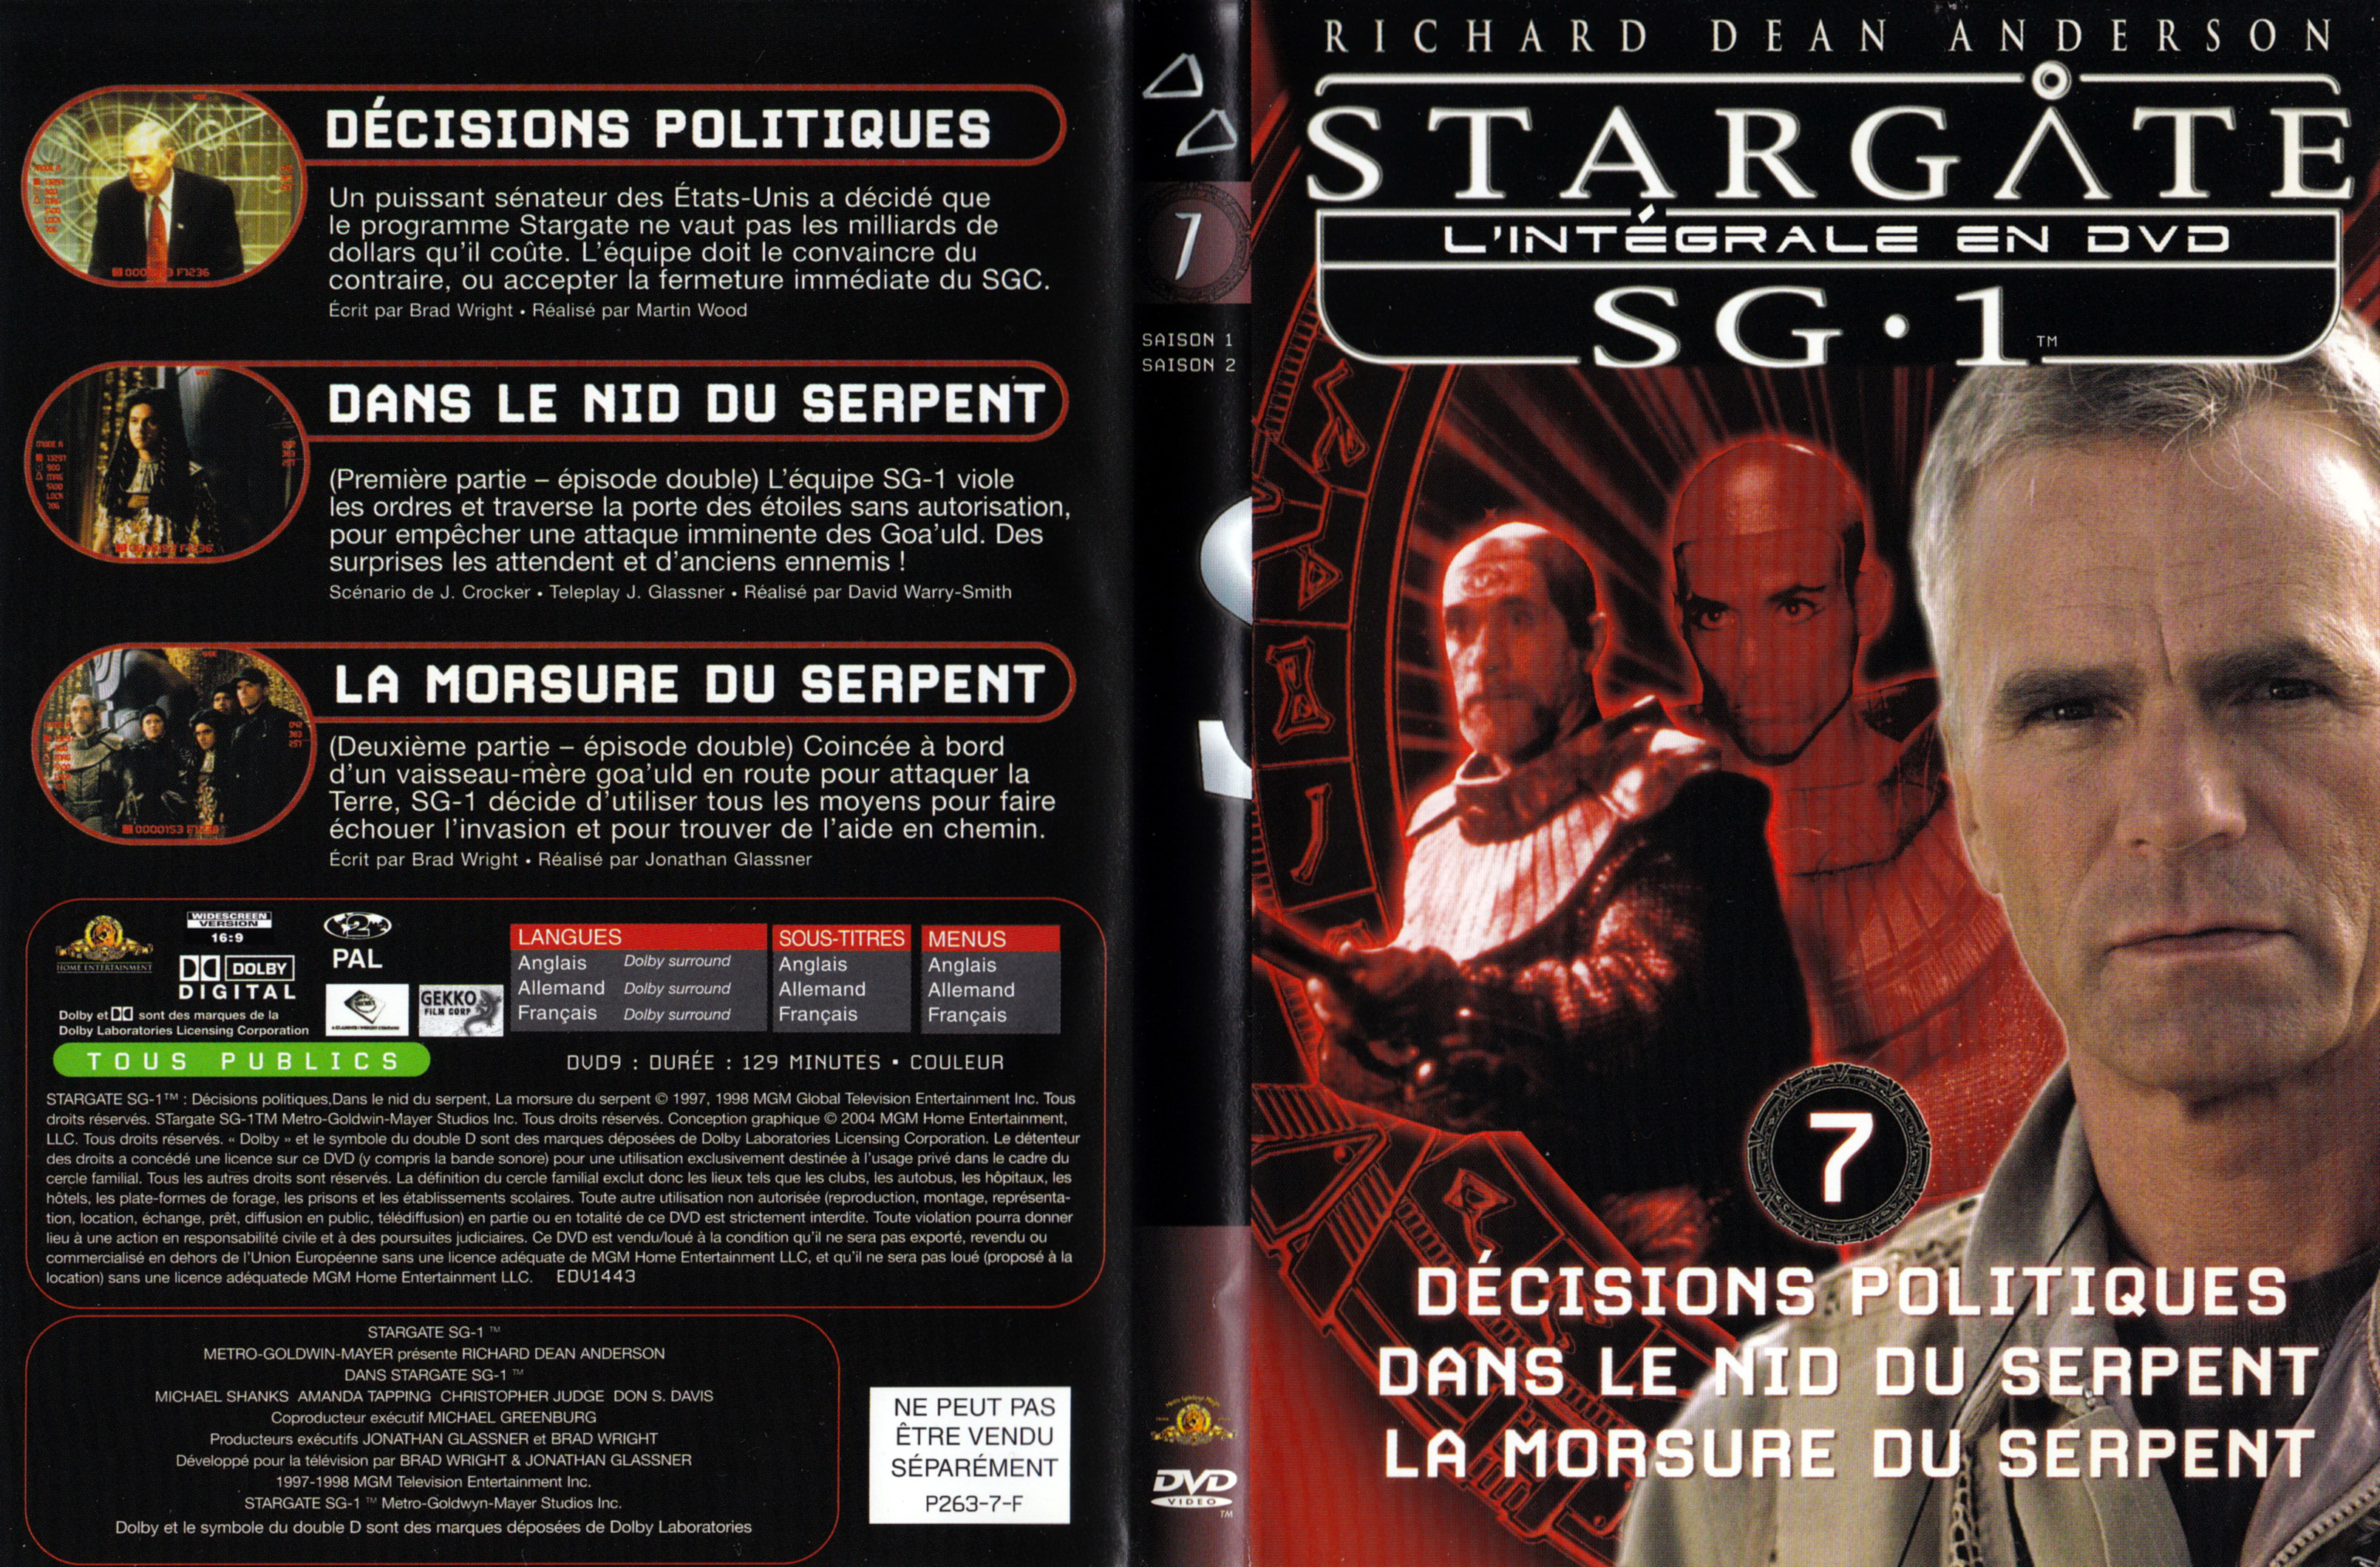 Jaquette DVD Stargate SG1 Intgrale Saison 1-2 vol 07